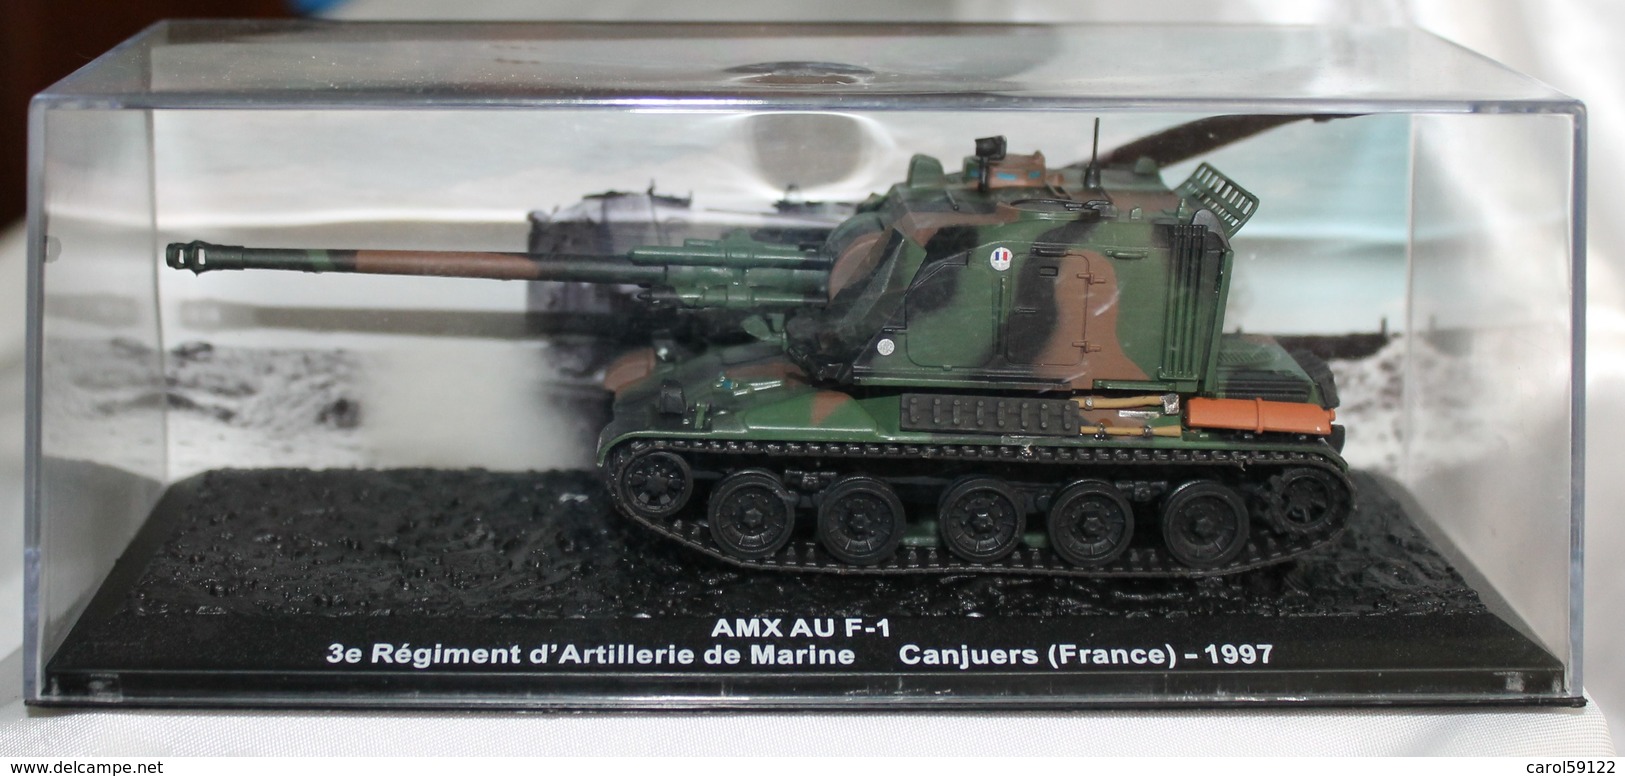 Maquette AMX AU F-1 1997 - Véhicules